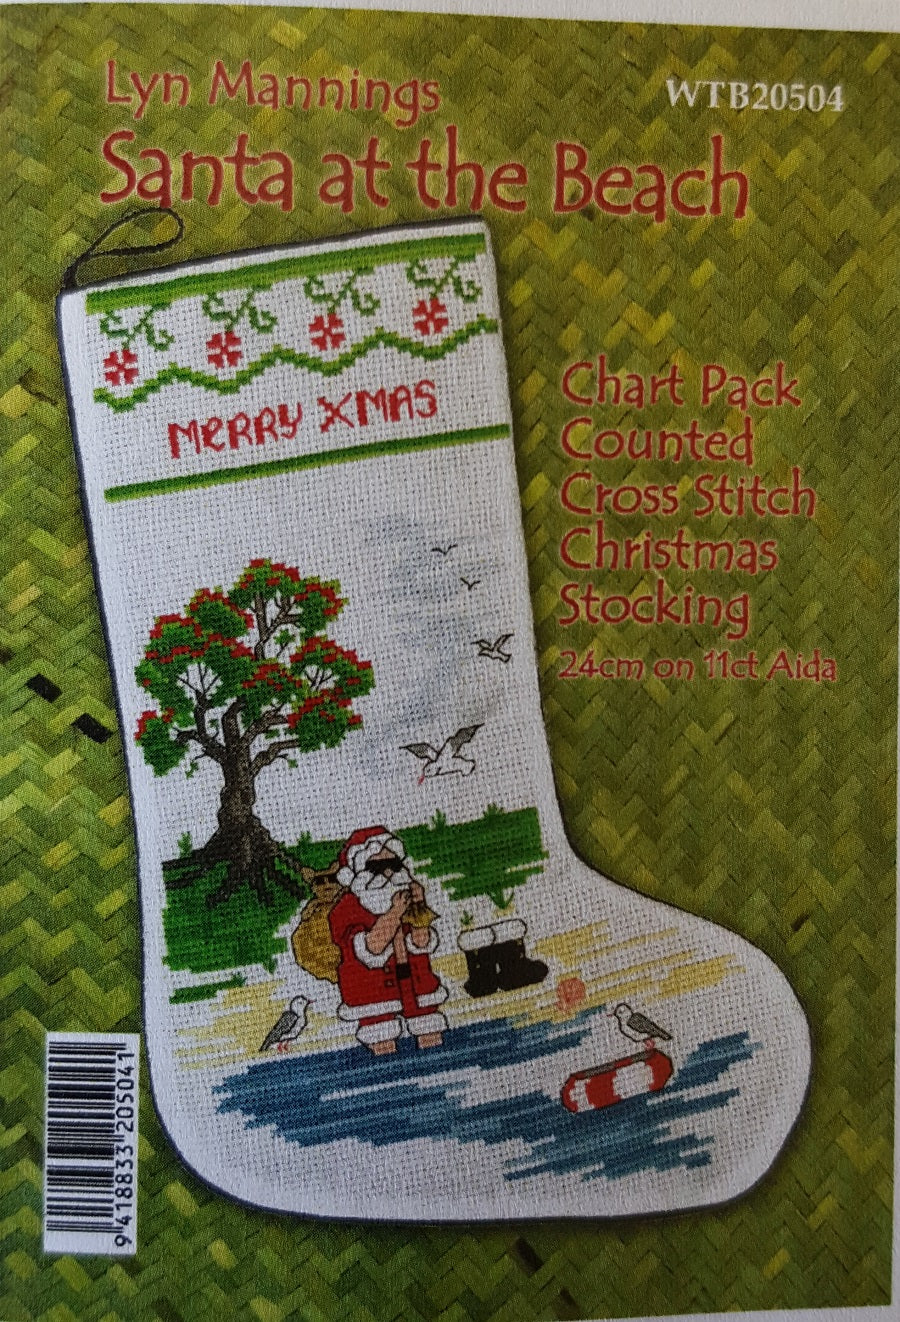 Christmas Cross Stitch Chart Packs